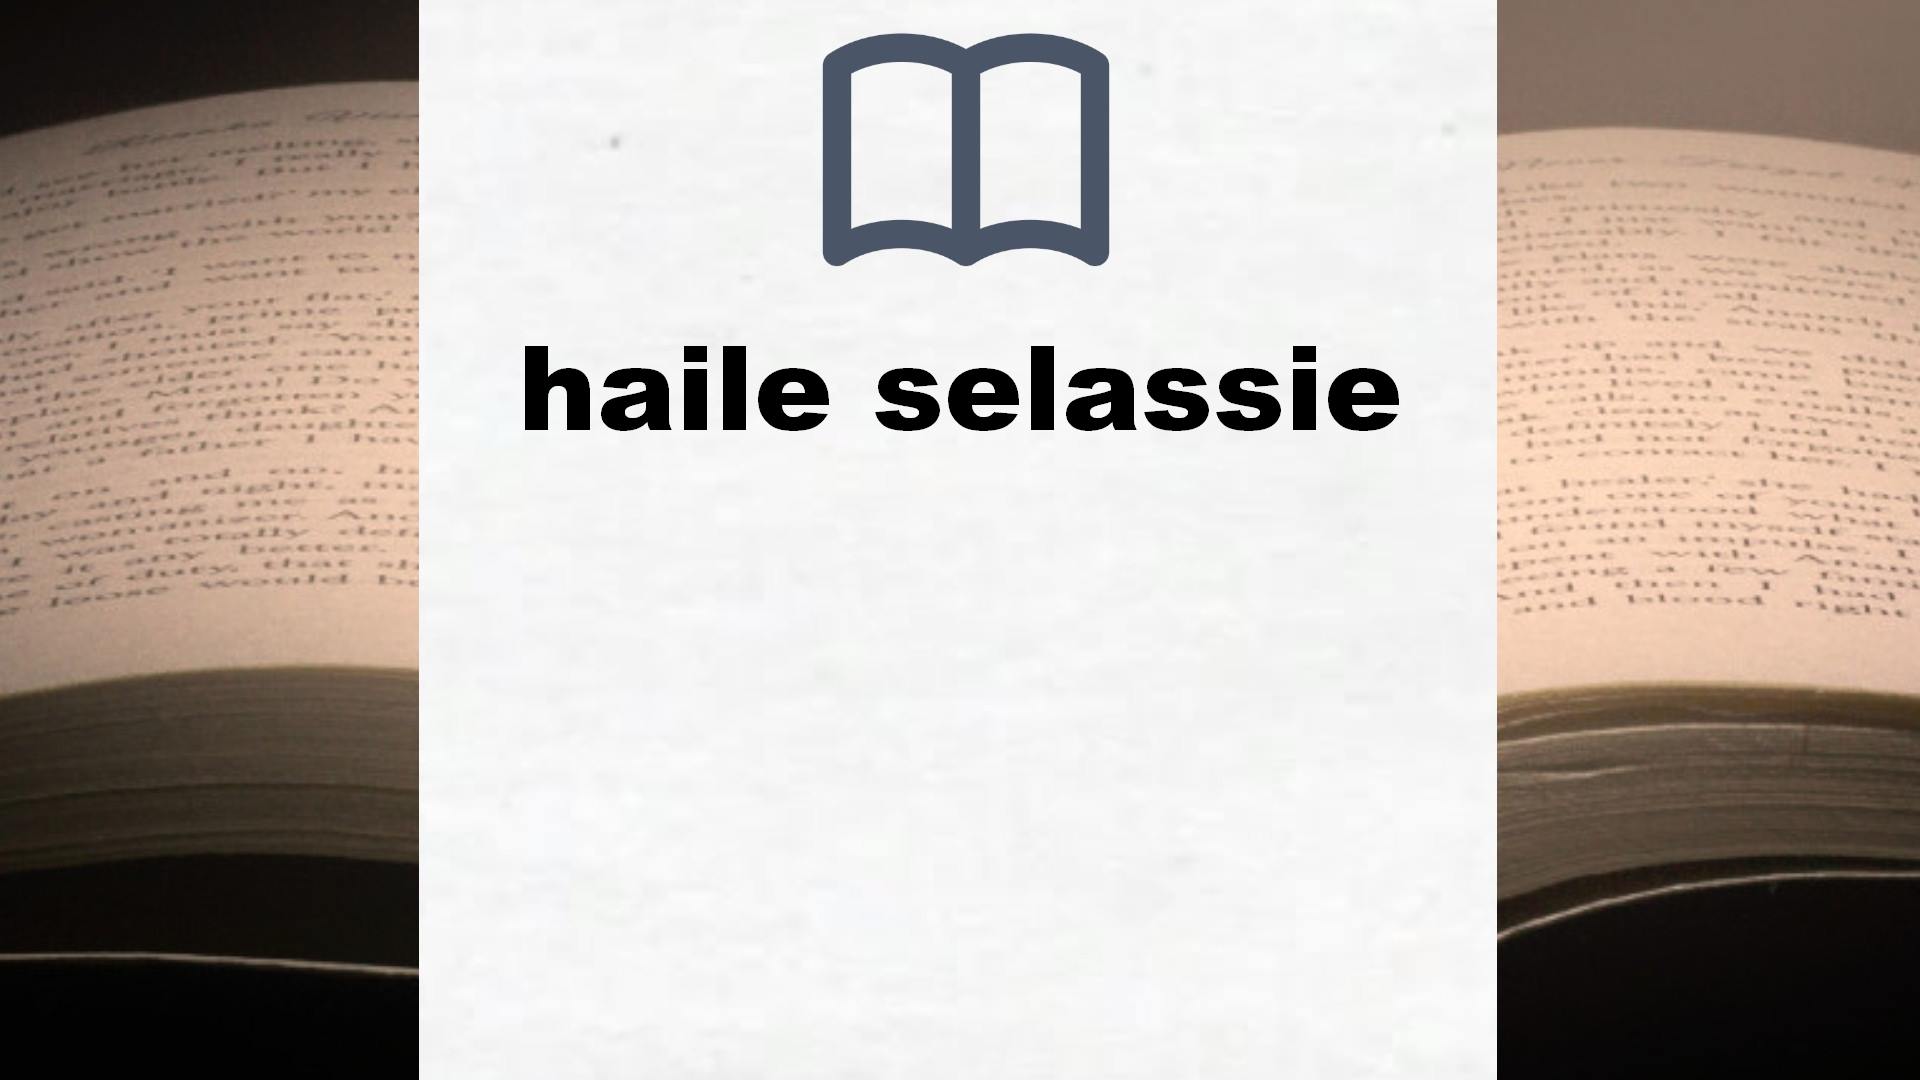 Libros sobre haile selassie